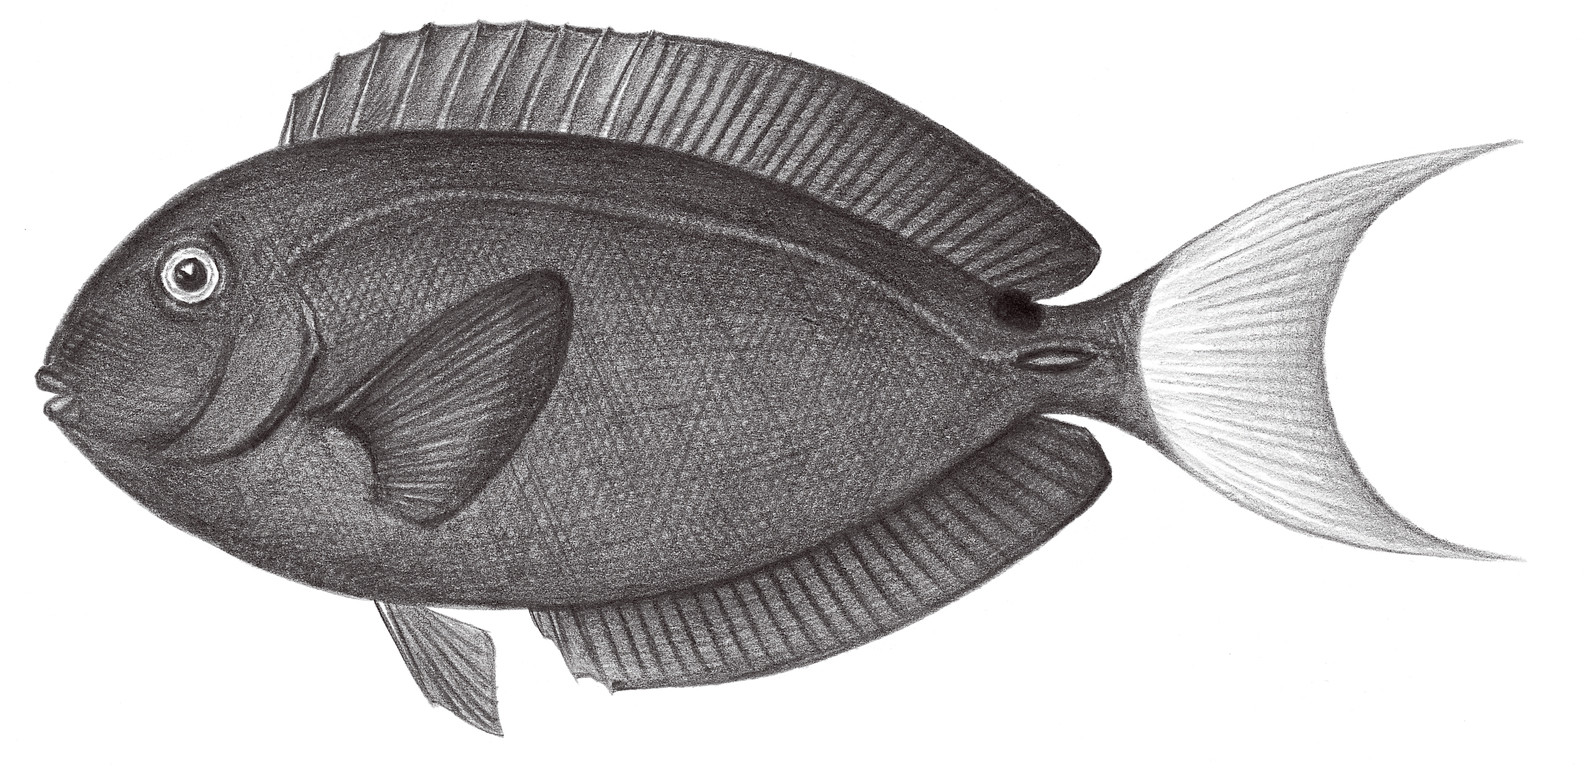 2302.	唐氏（黃尾）棘尾鯛 Acanthurus thompsoni (Fowler, 1923)